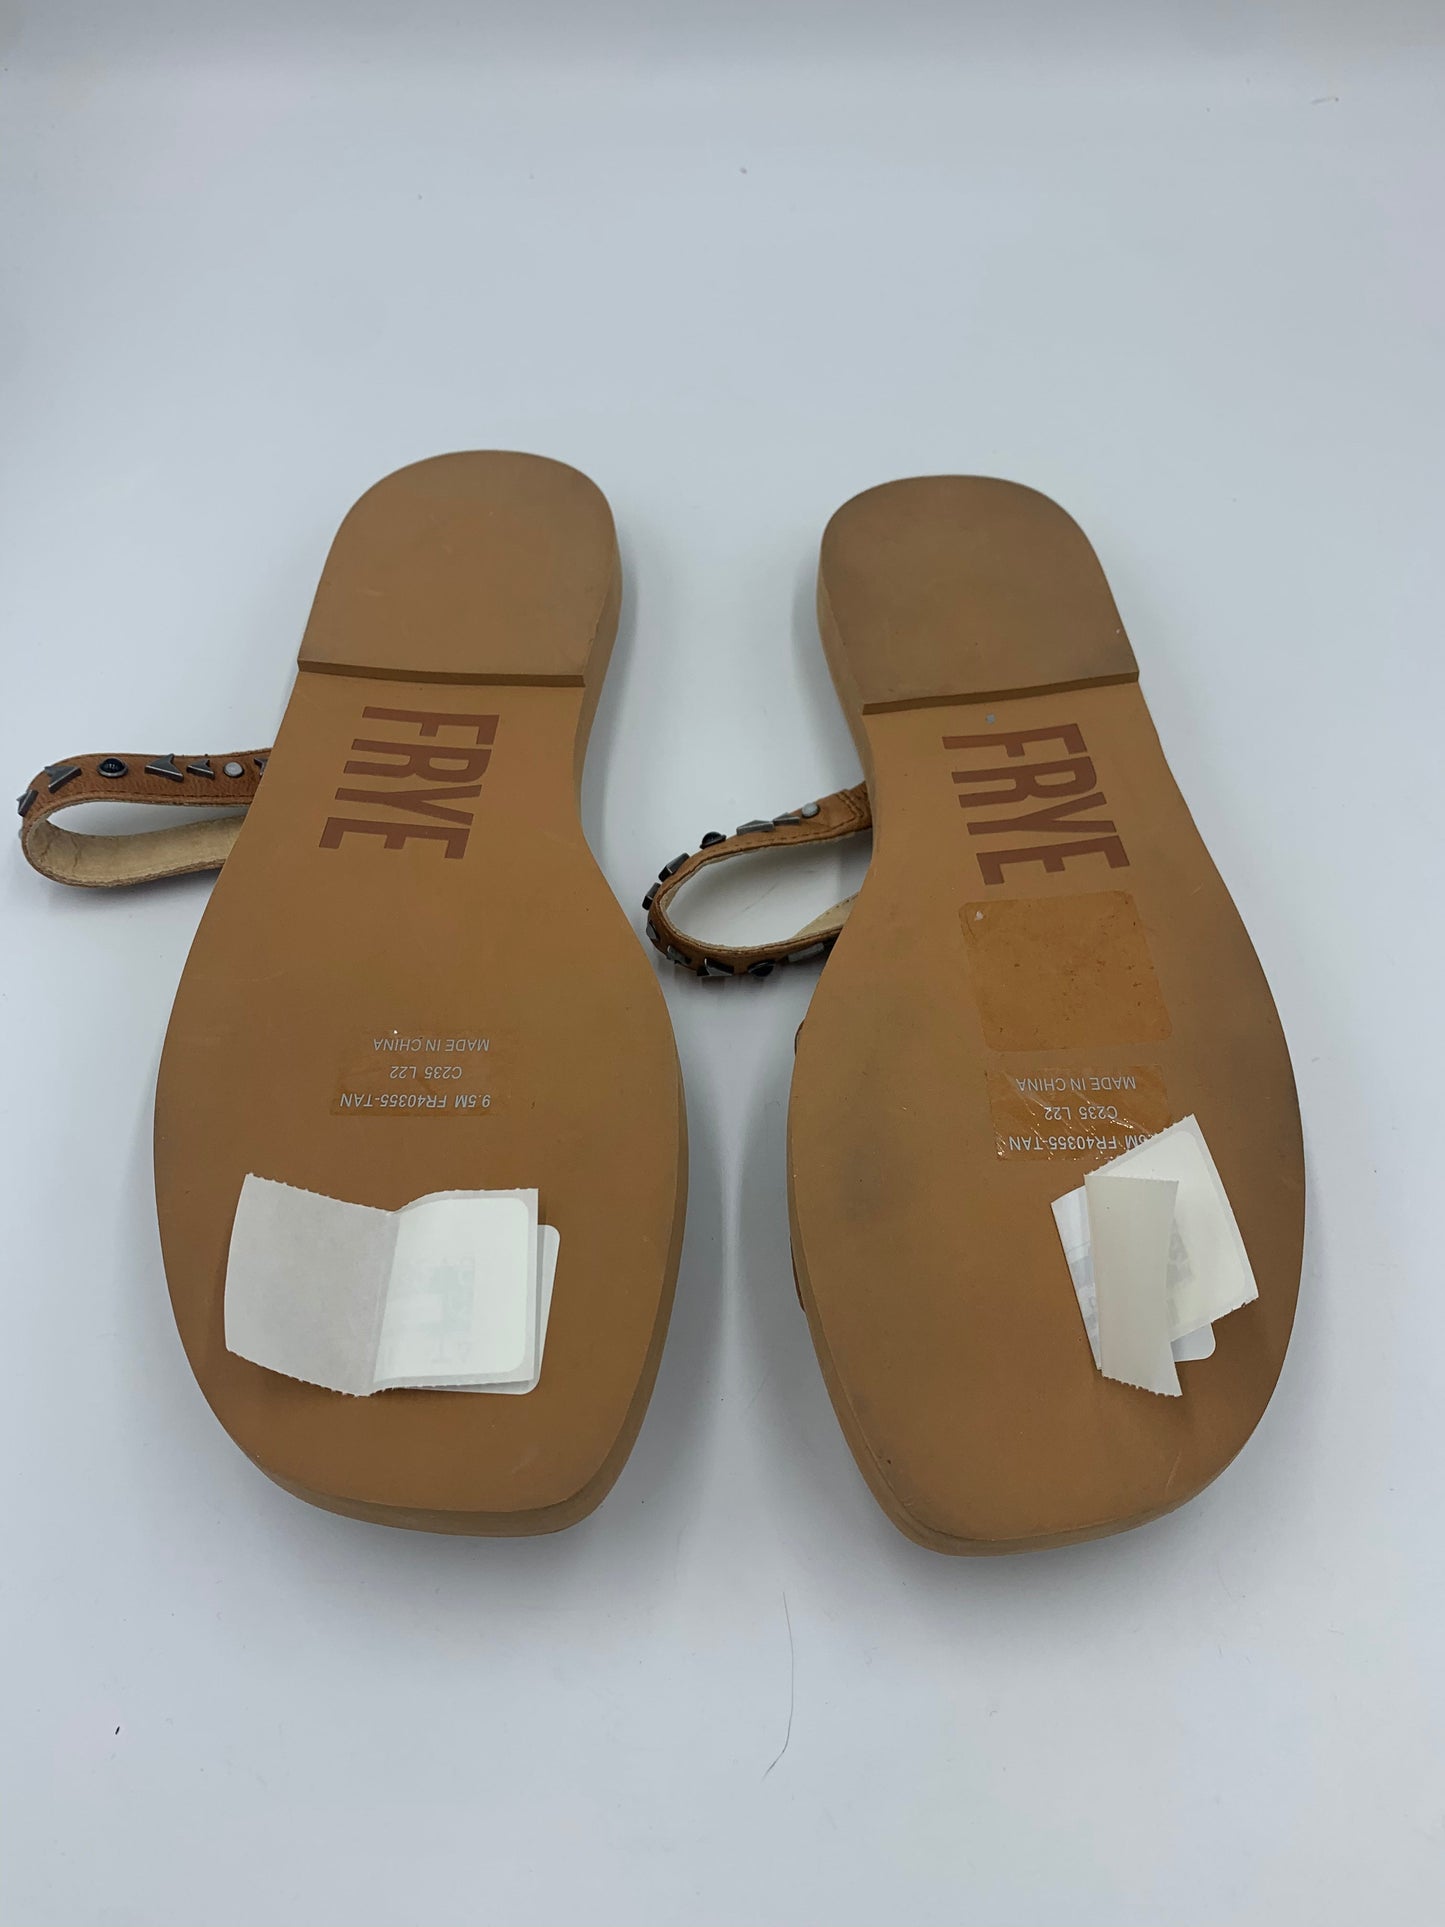 Brown Sandals Designer Frye, Size 9.5